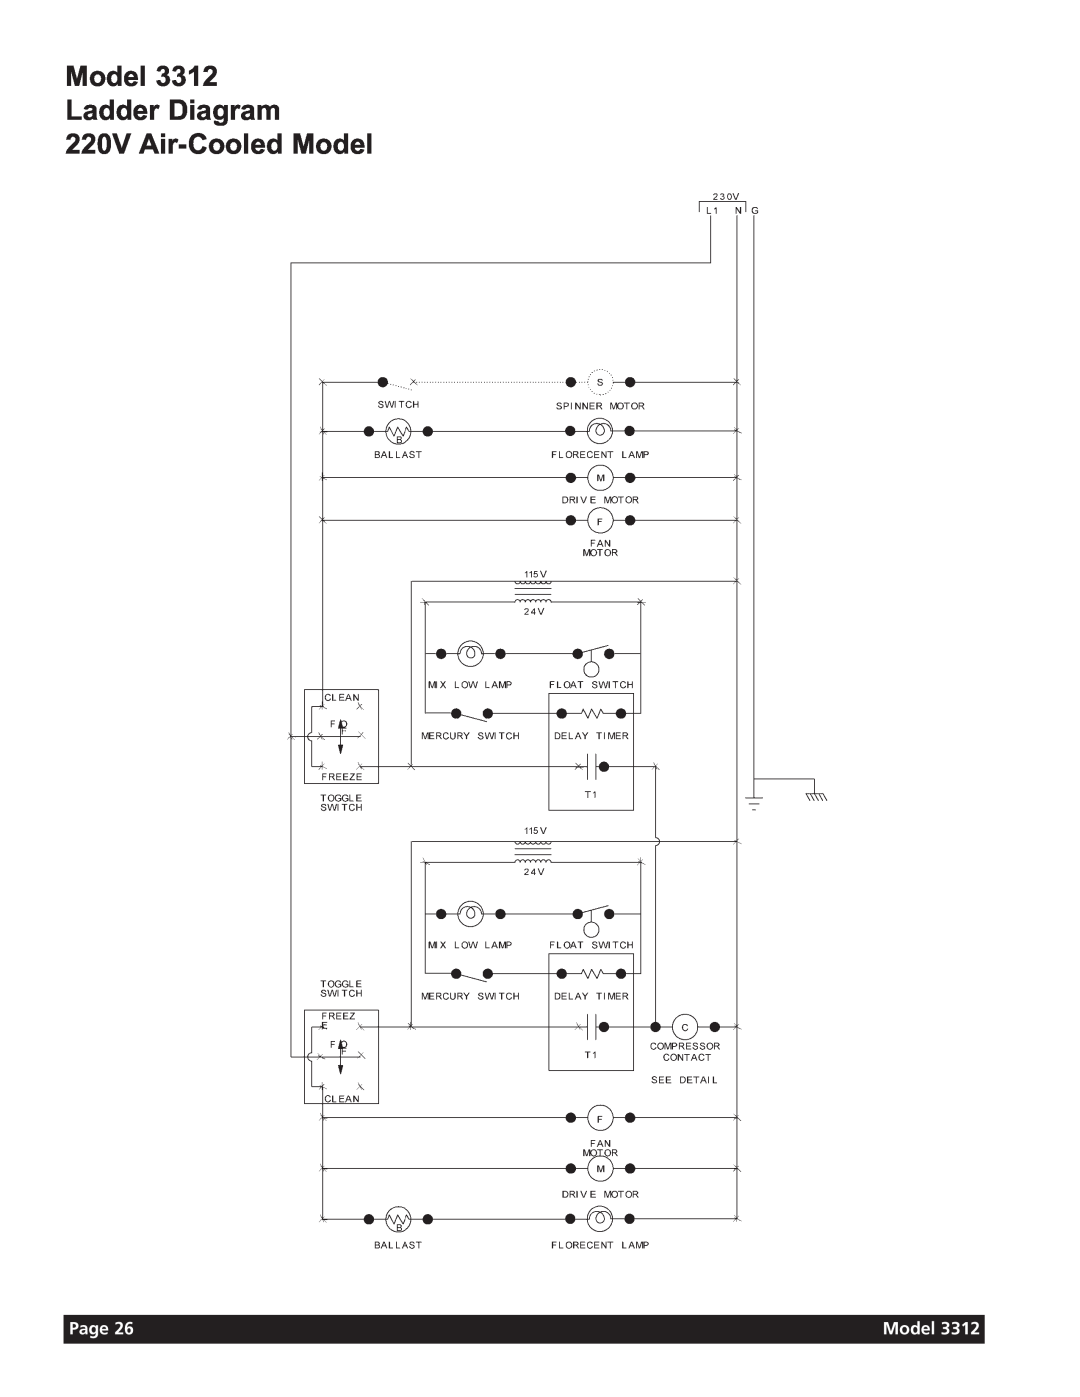 Grindmaster 3311 manual Model Ladder Diagram 220V Air-CooledModel, Page 